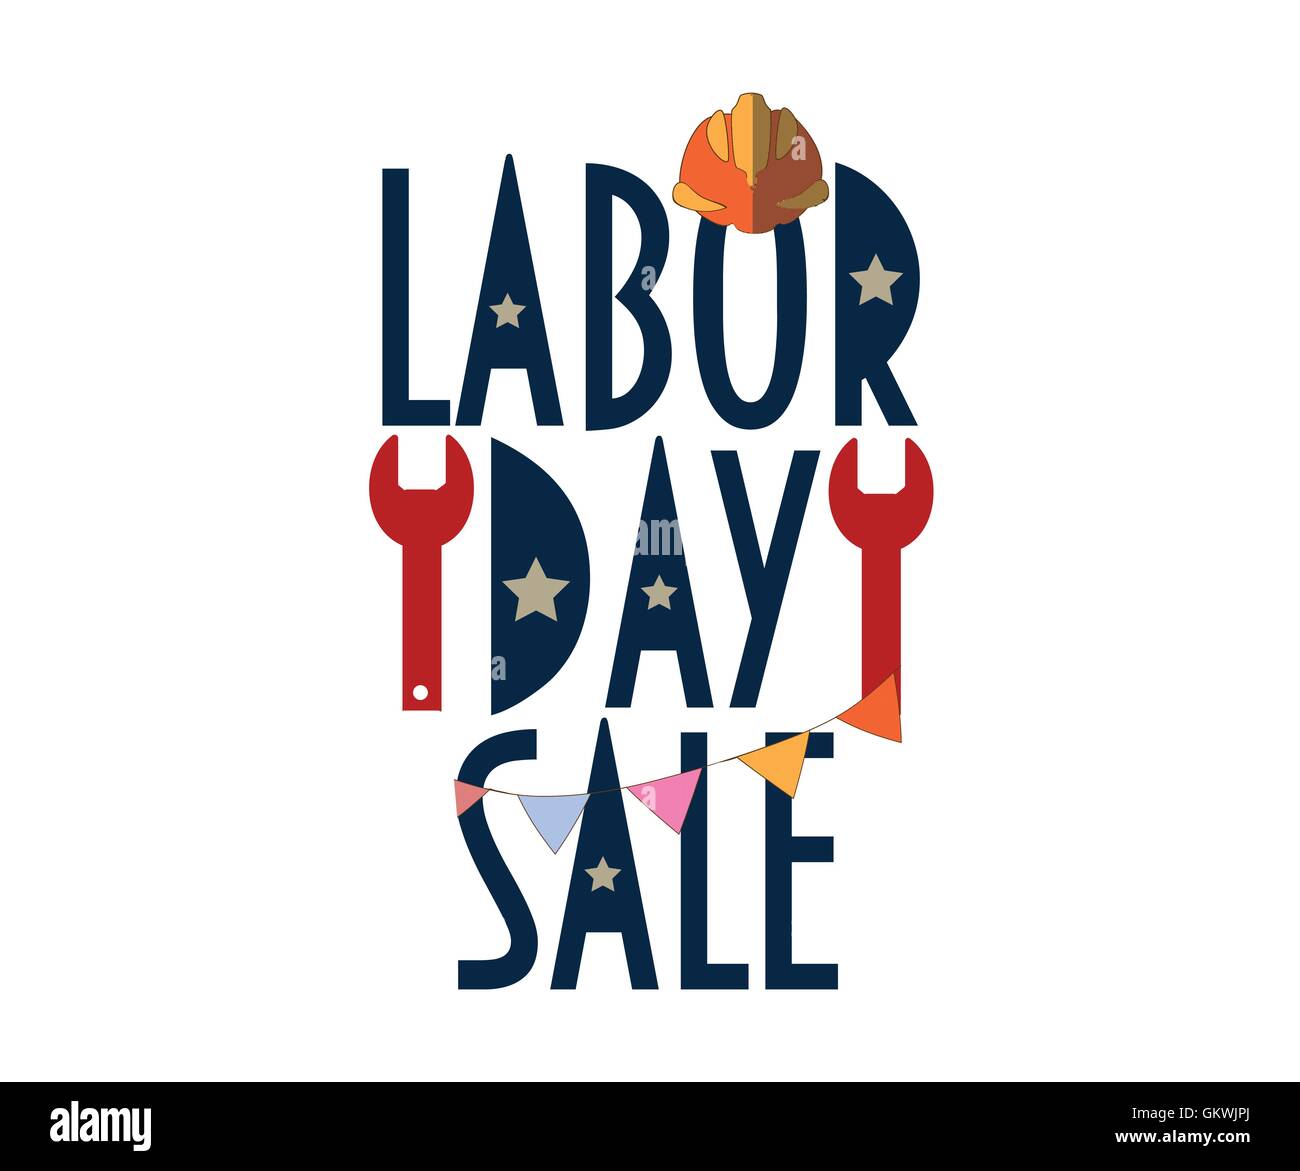 Labor Day Sale Text mit goldenem Hintergrund. Tag der Arbeit-Förderung. Tag der Arbeit-Verkauf. Tag der Arbeit-Förderung. Stock Vektor